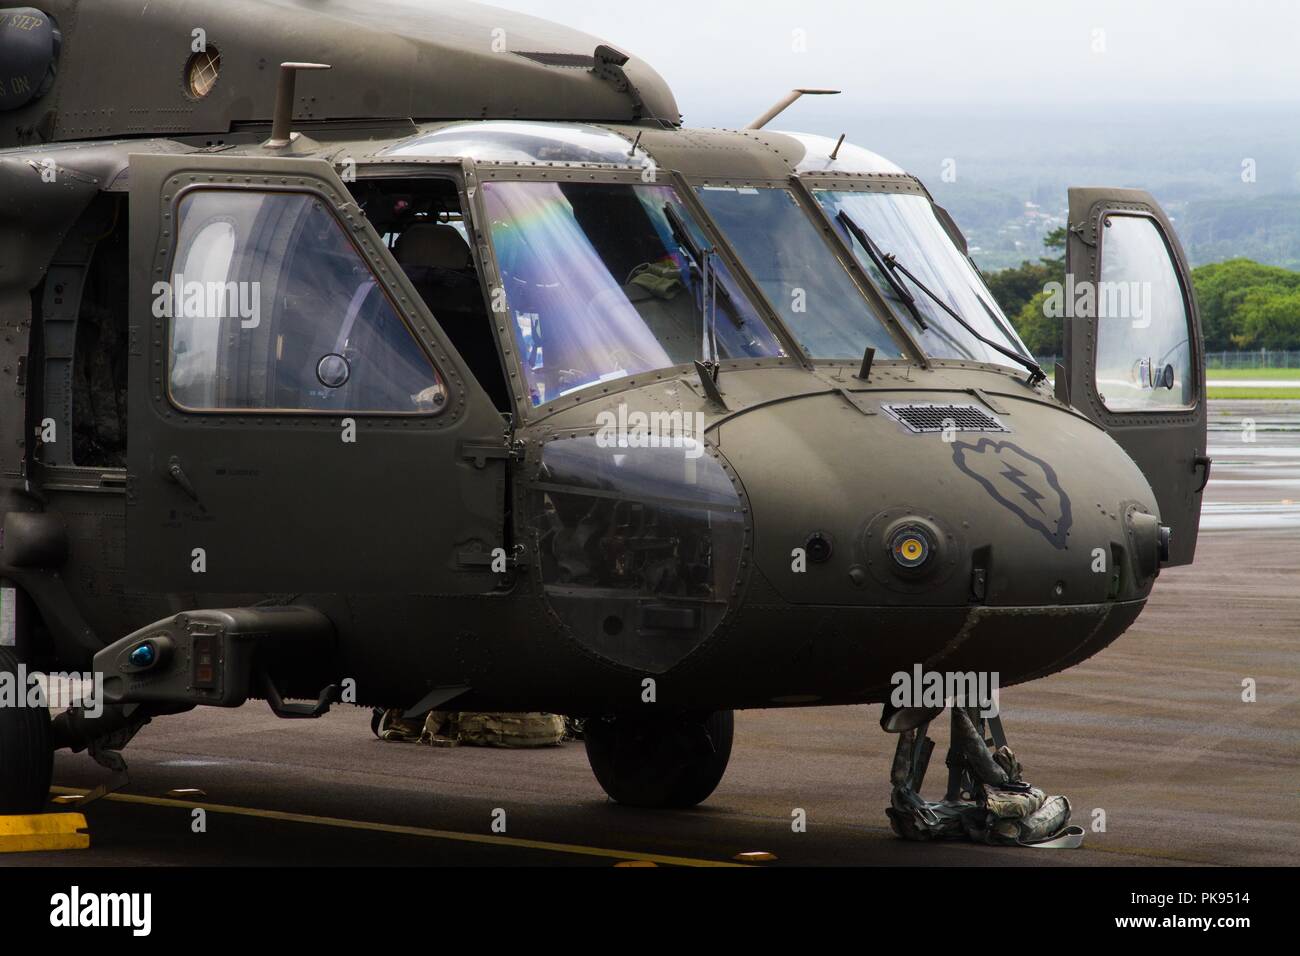 Soldaten aus UH-60 Black Hawk Flugzeugbesatzungen, 25 Combat Aviation Brigade, 25 Infanterie Division, Washington, Vorbereiten zum Verteidigungsministerium Unterstützung Missionen, die Federal Emergency Management Agency als Teil der Gemeinsamen Task Force 5-0, August 26, 2018. Diese Task Force wurde eingerichtet, um die Auswirkungen von Hurrikan Lane auf Hawaii zu reagieren. Der lokalen und staatlichen Behörden von Hawaii, durch JTF 5-0 beantragt, HH-60M Black Hawk Hubschraubern mit Hebezeug Fähigkeit lokaler Behörden mit Wiederherstellungs Operationen auf der Insel von Hawaii zu unterstützen. JTF 5-0 ist eine gemeinsame Task Force durch ein Dual-LED Stockfoto